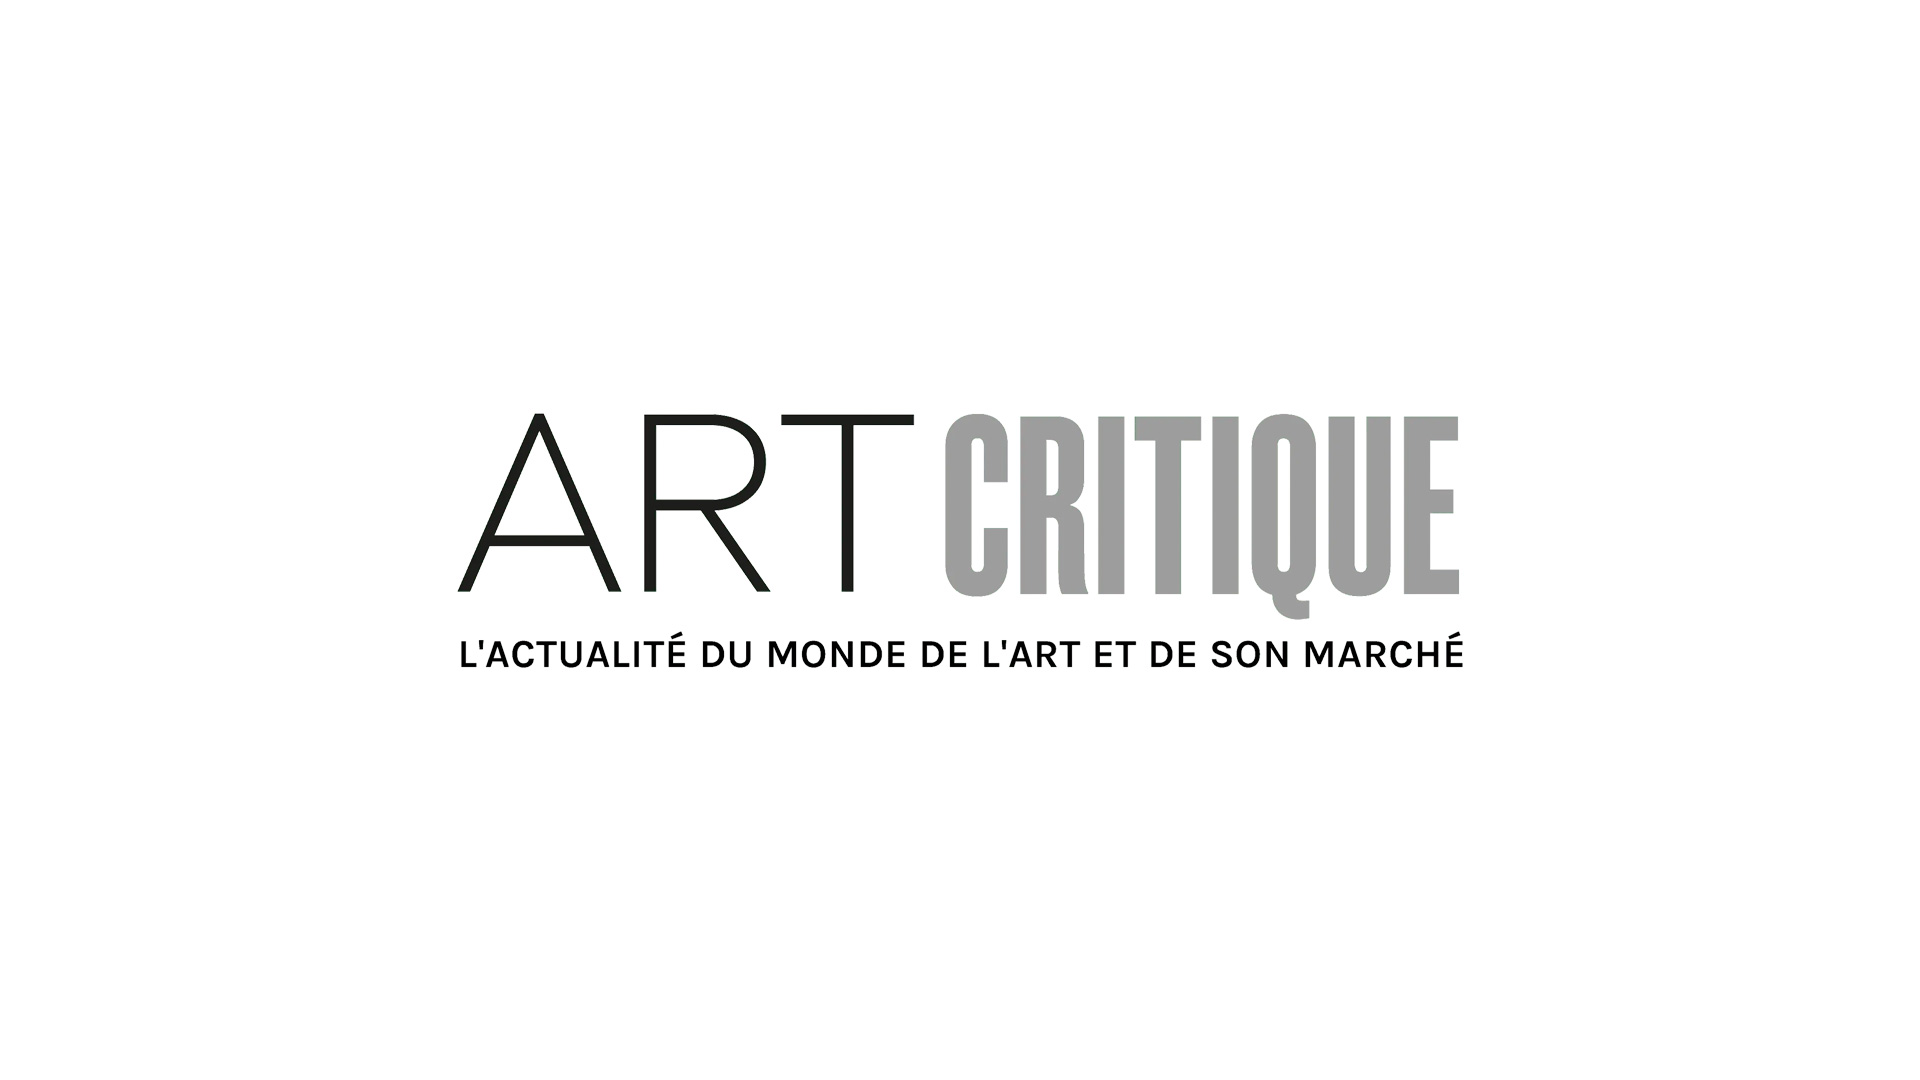 Un record de fréquentation pour le Salon des Artistes Français